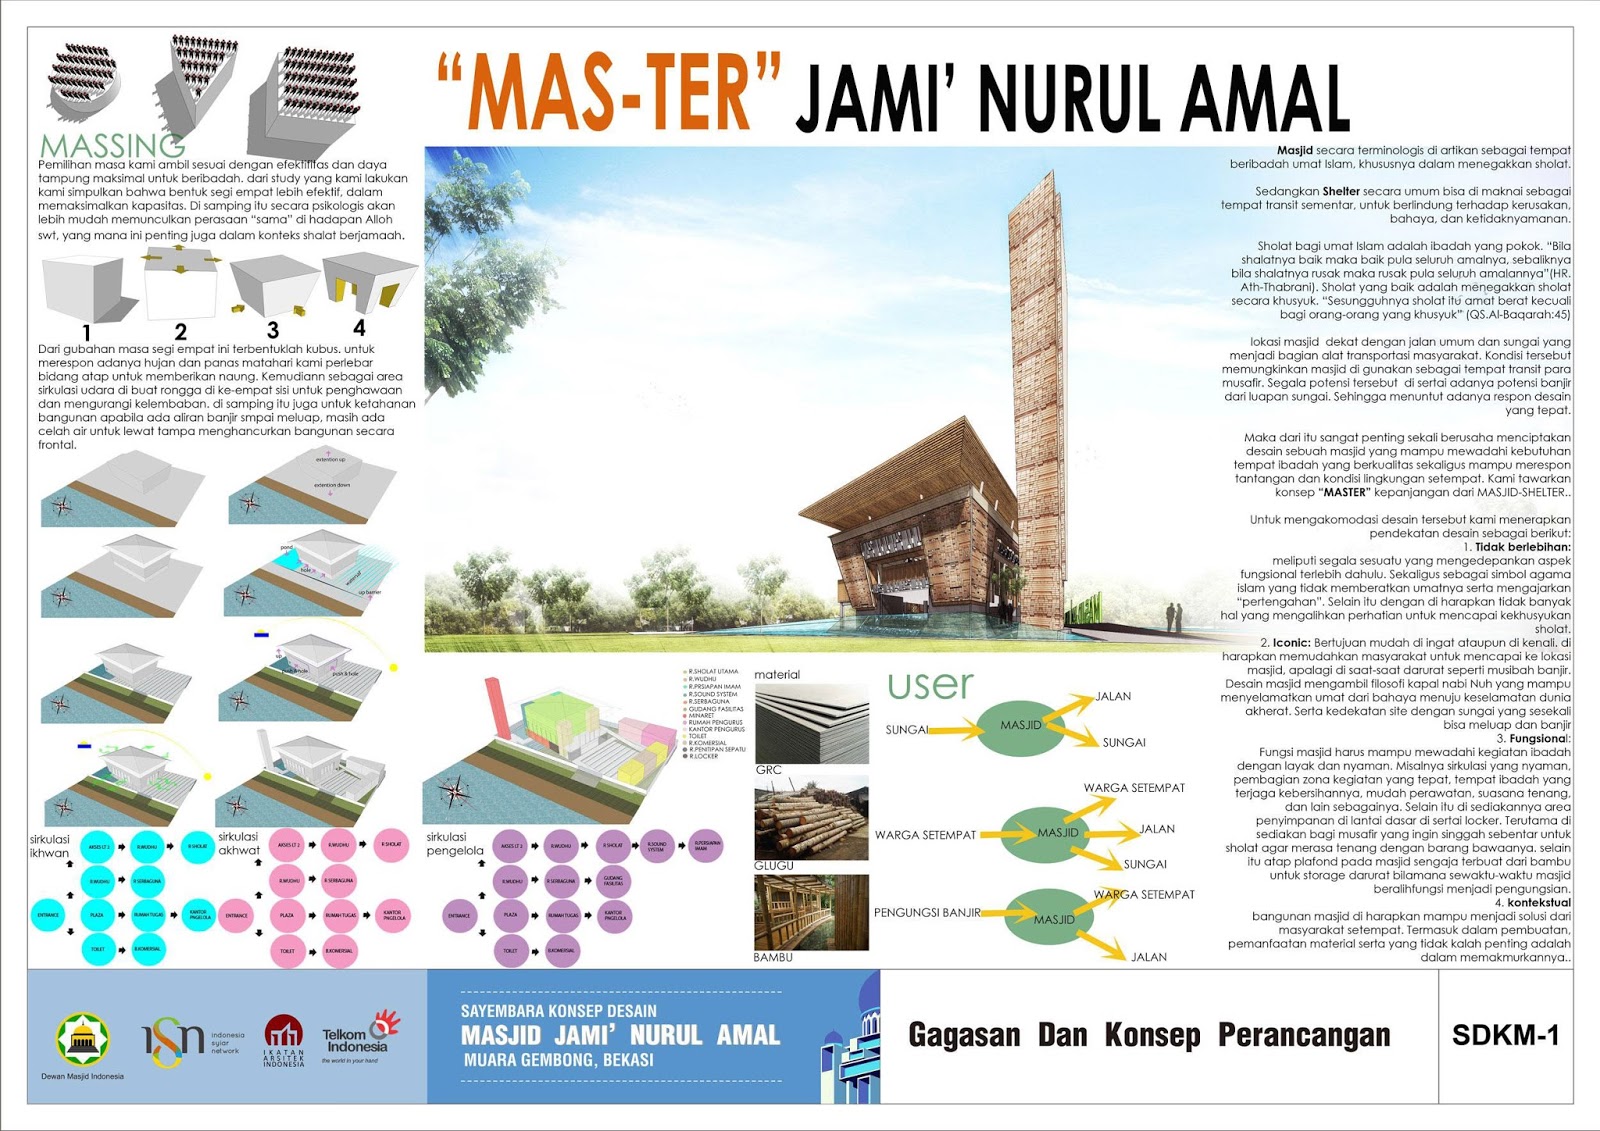 Pemenang ke 2 Sayembara Desain Masjid Jami Nurul Amal 